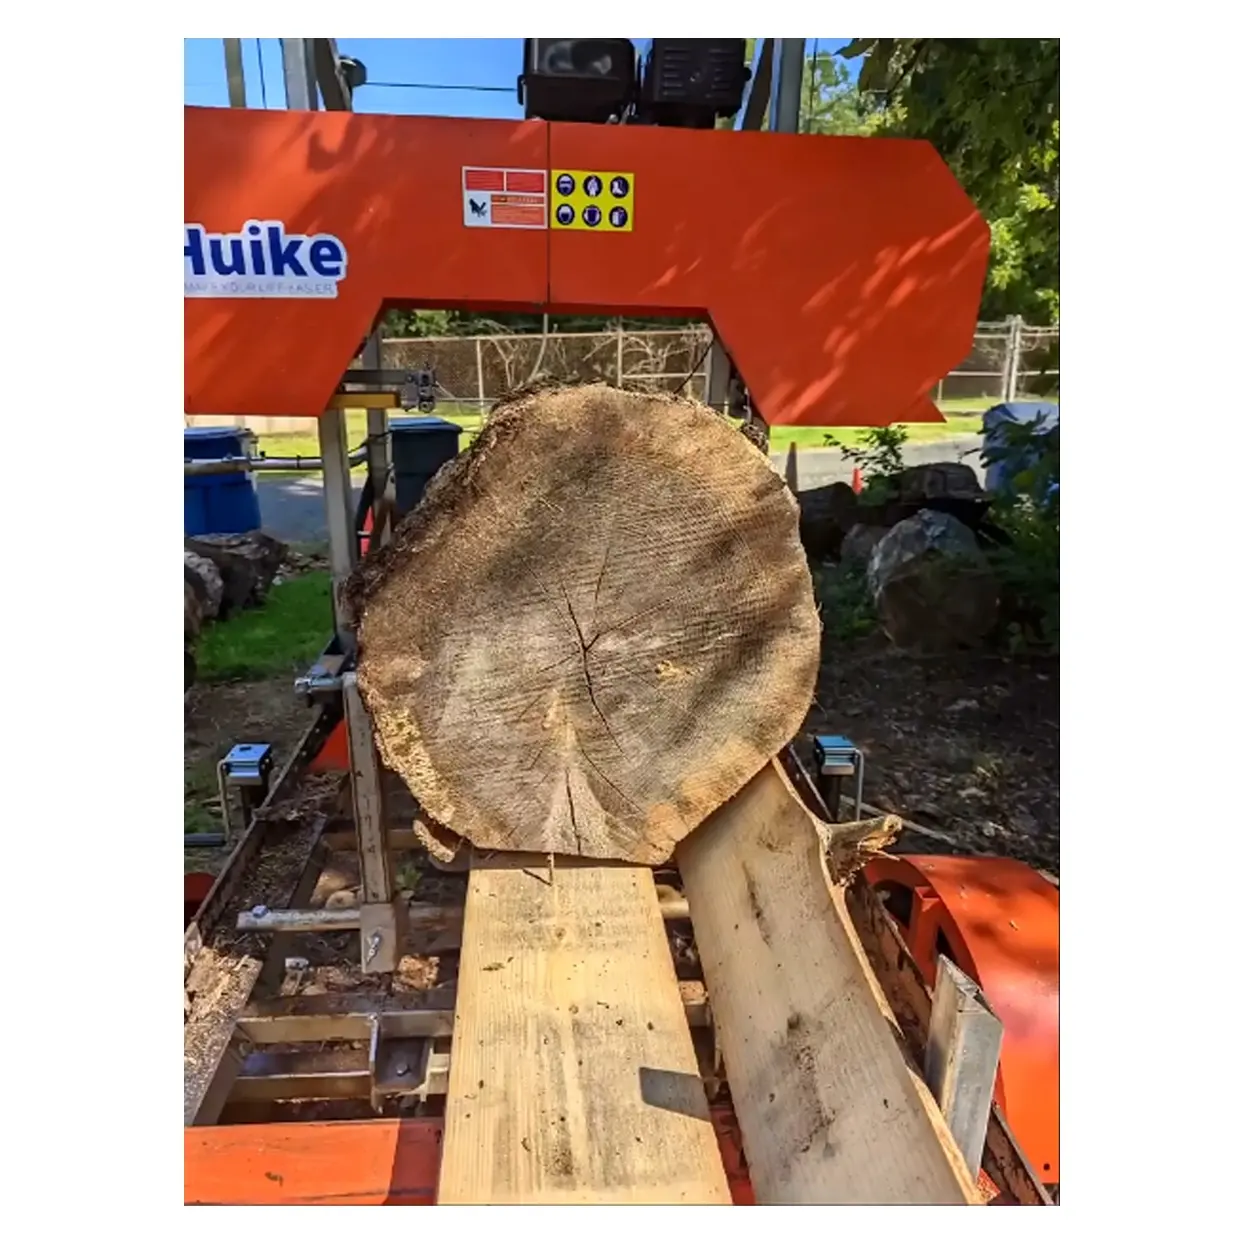 Huike – machine à scie à ruban portative horizontale pour le travail du bois, approuvée CE EPA